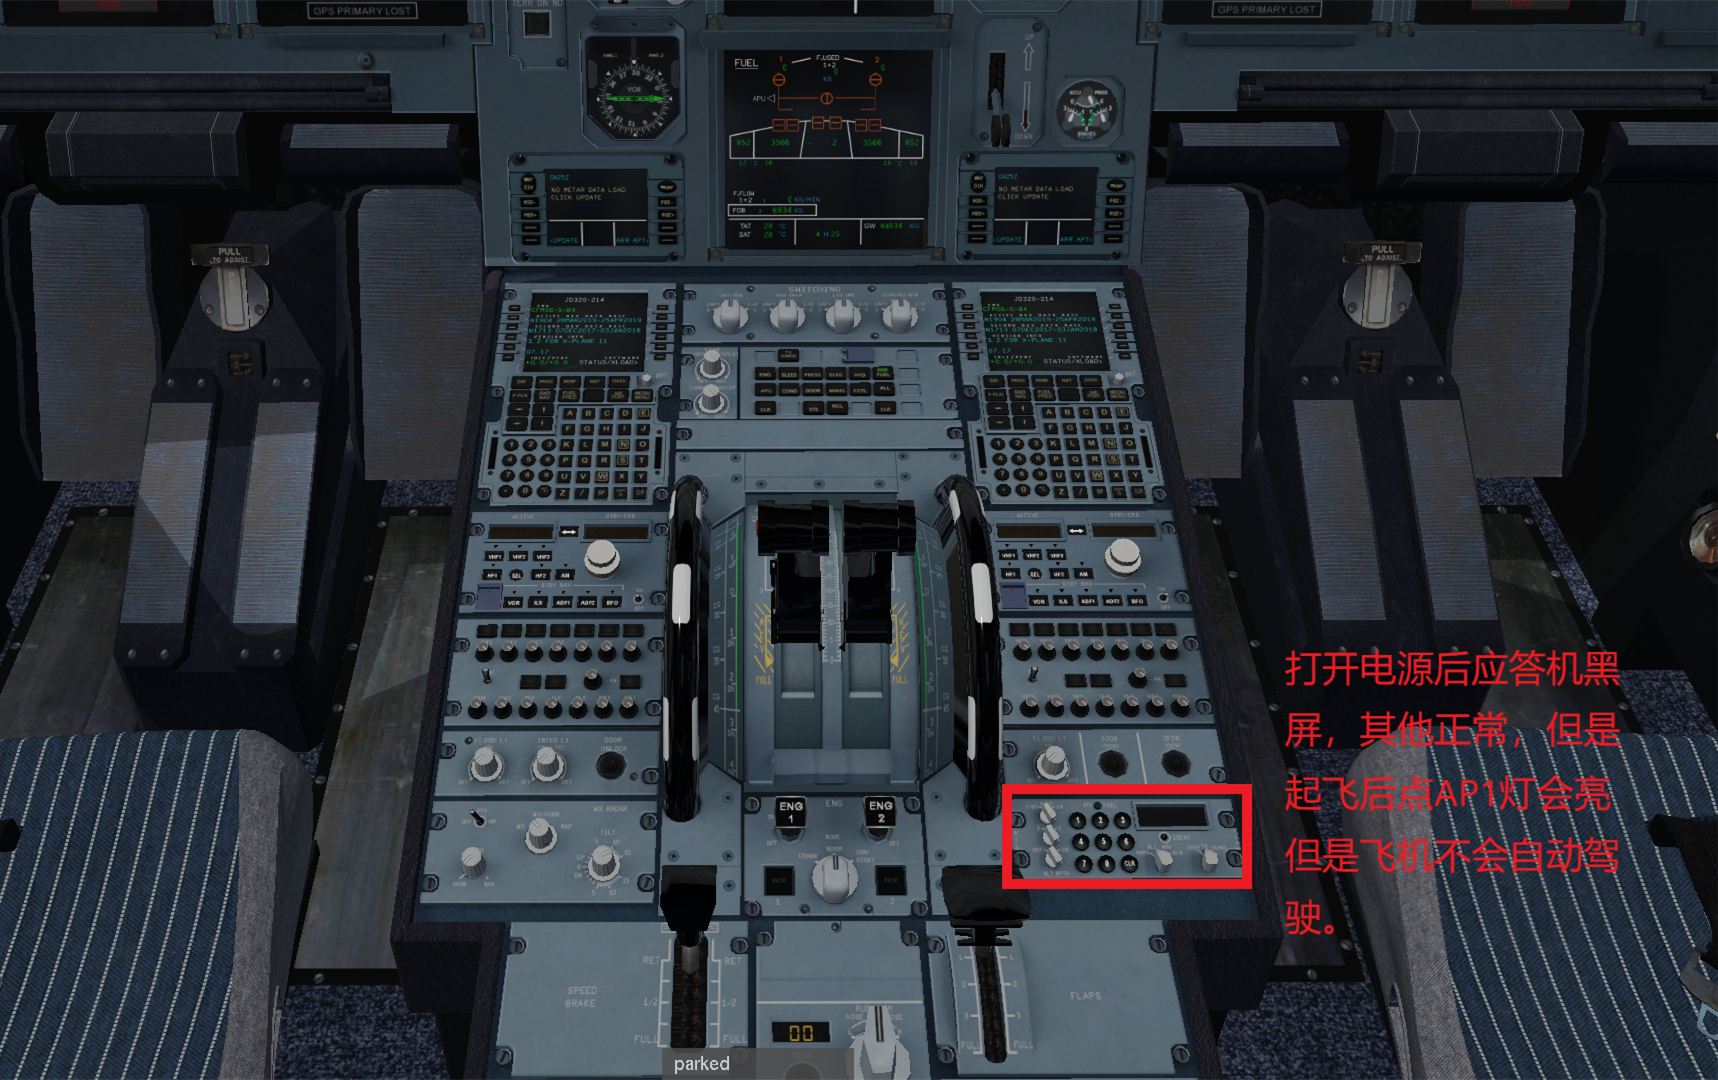 JARD A320  不能导航应答机黑屏的解决办法-1393 